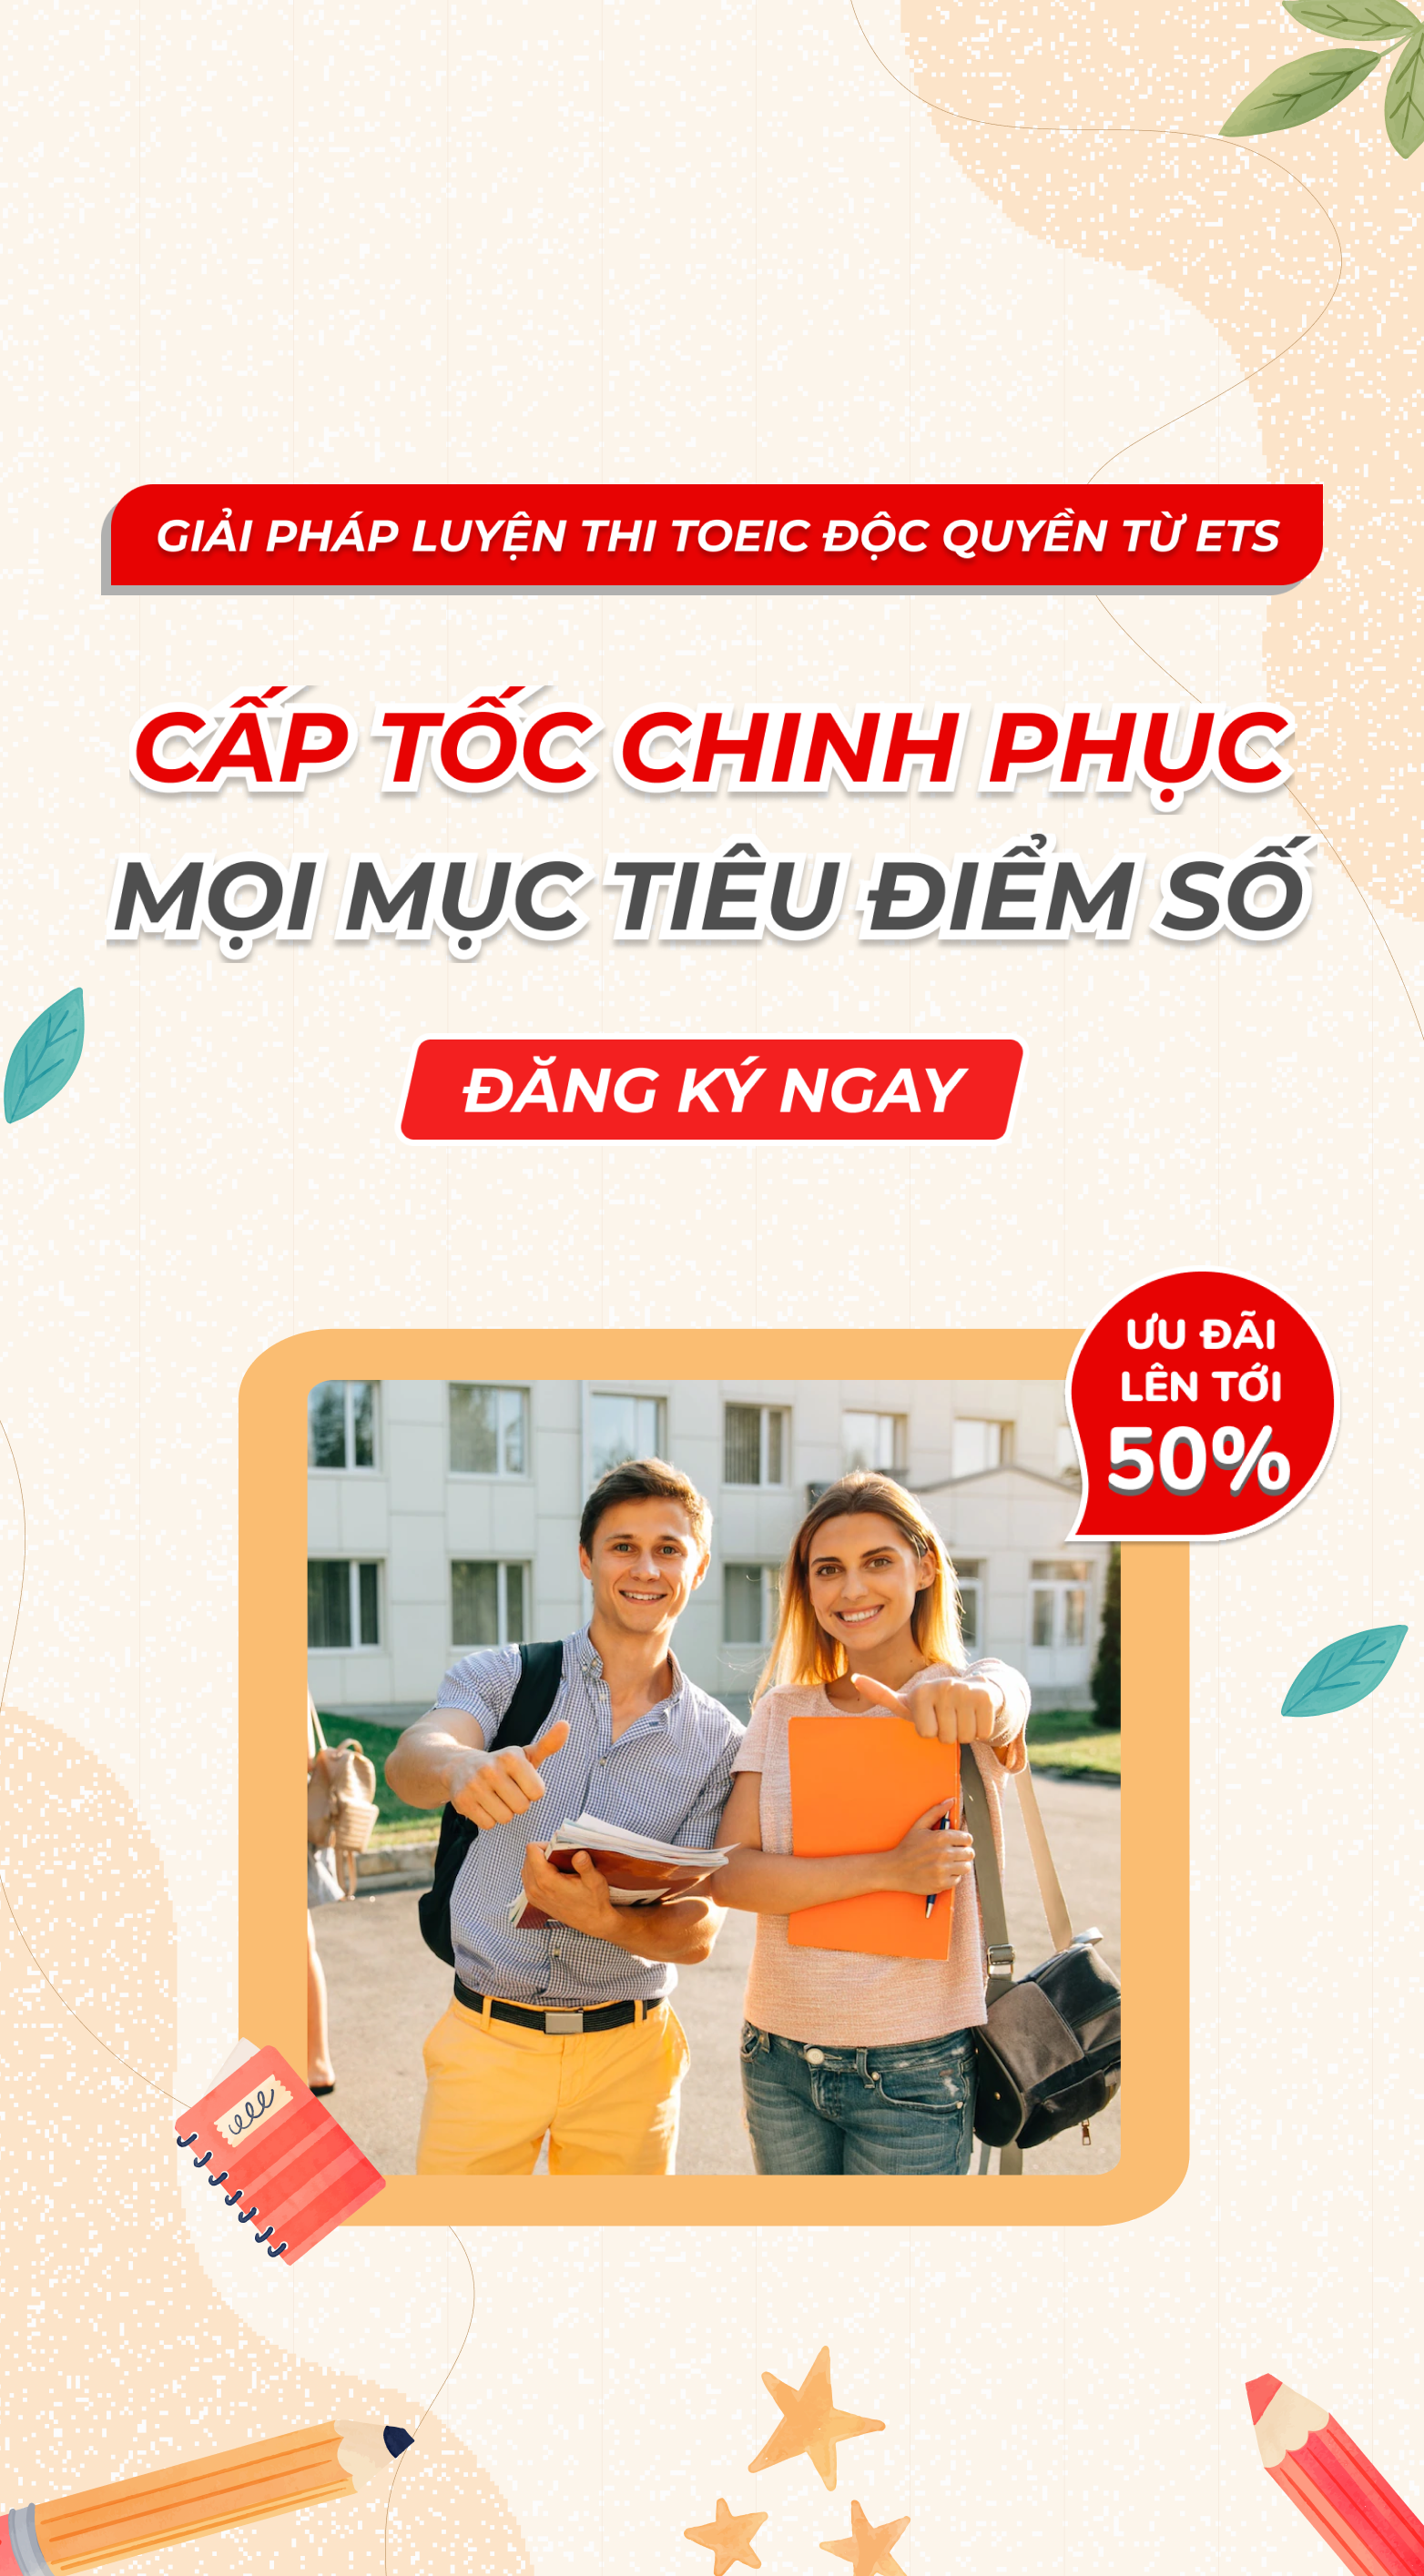 Tổ chức Giáo dục IIG Việt Nam là một trong những địa chỉ uy tín hàng đầu để nâng cao năng lực tiếng Anh của bạn. Hãy đến với chúng tôi để rèn luyện khả năng ngôn ngữ của mình.